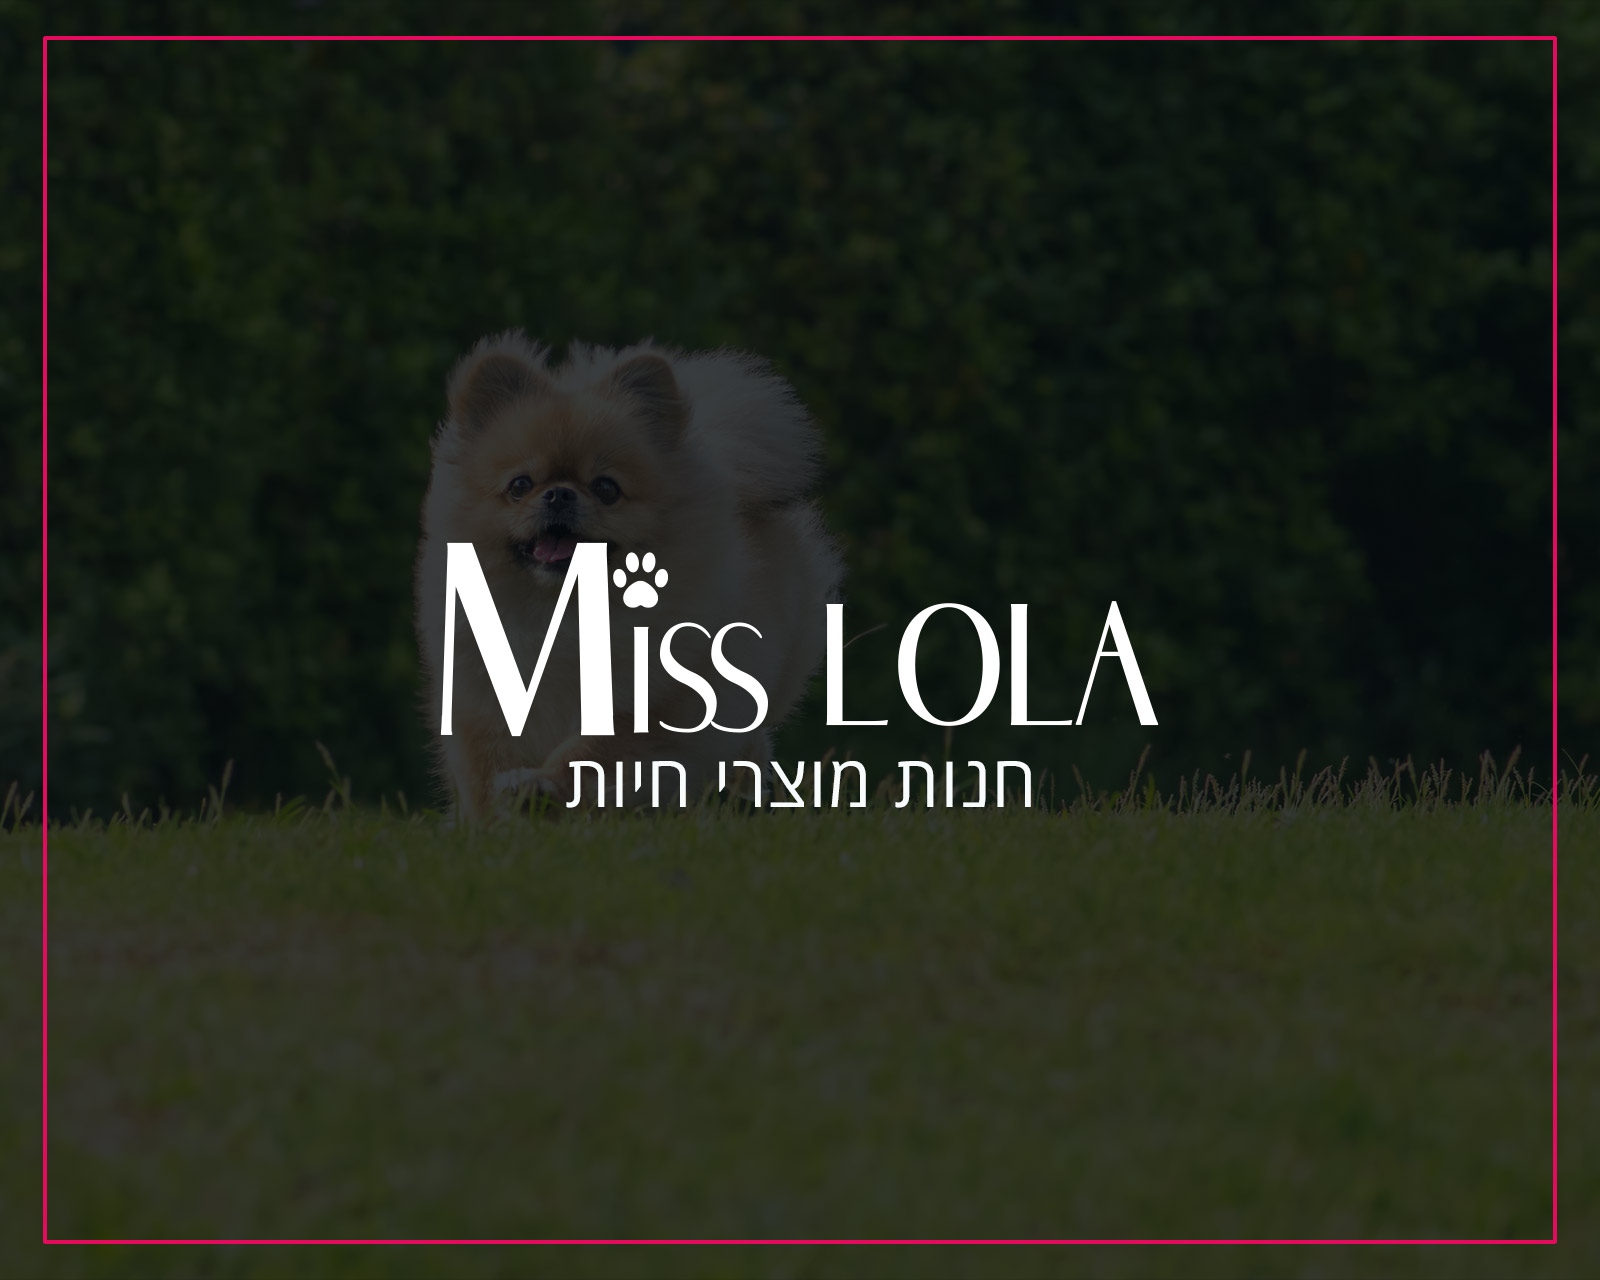 פרסום באינטרנט וקידום אורגני בגוגל לחברת מיס לולה חנות לכלבים - הקידום שלי